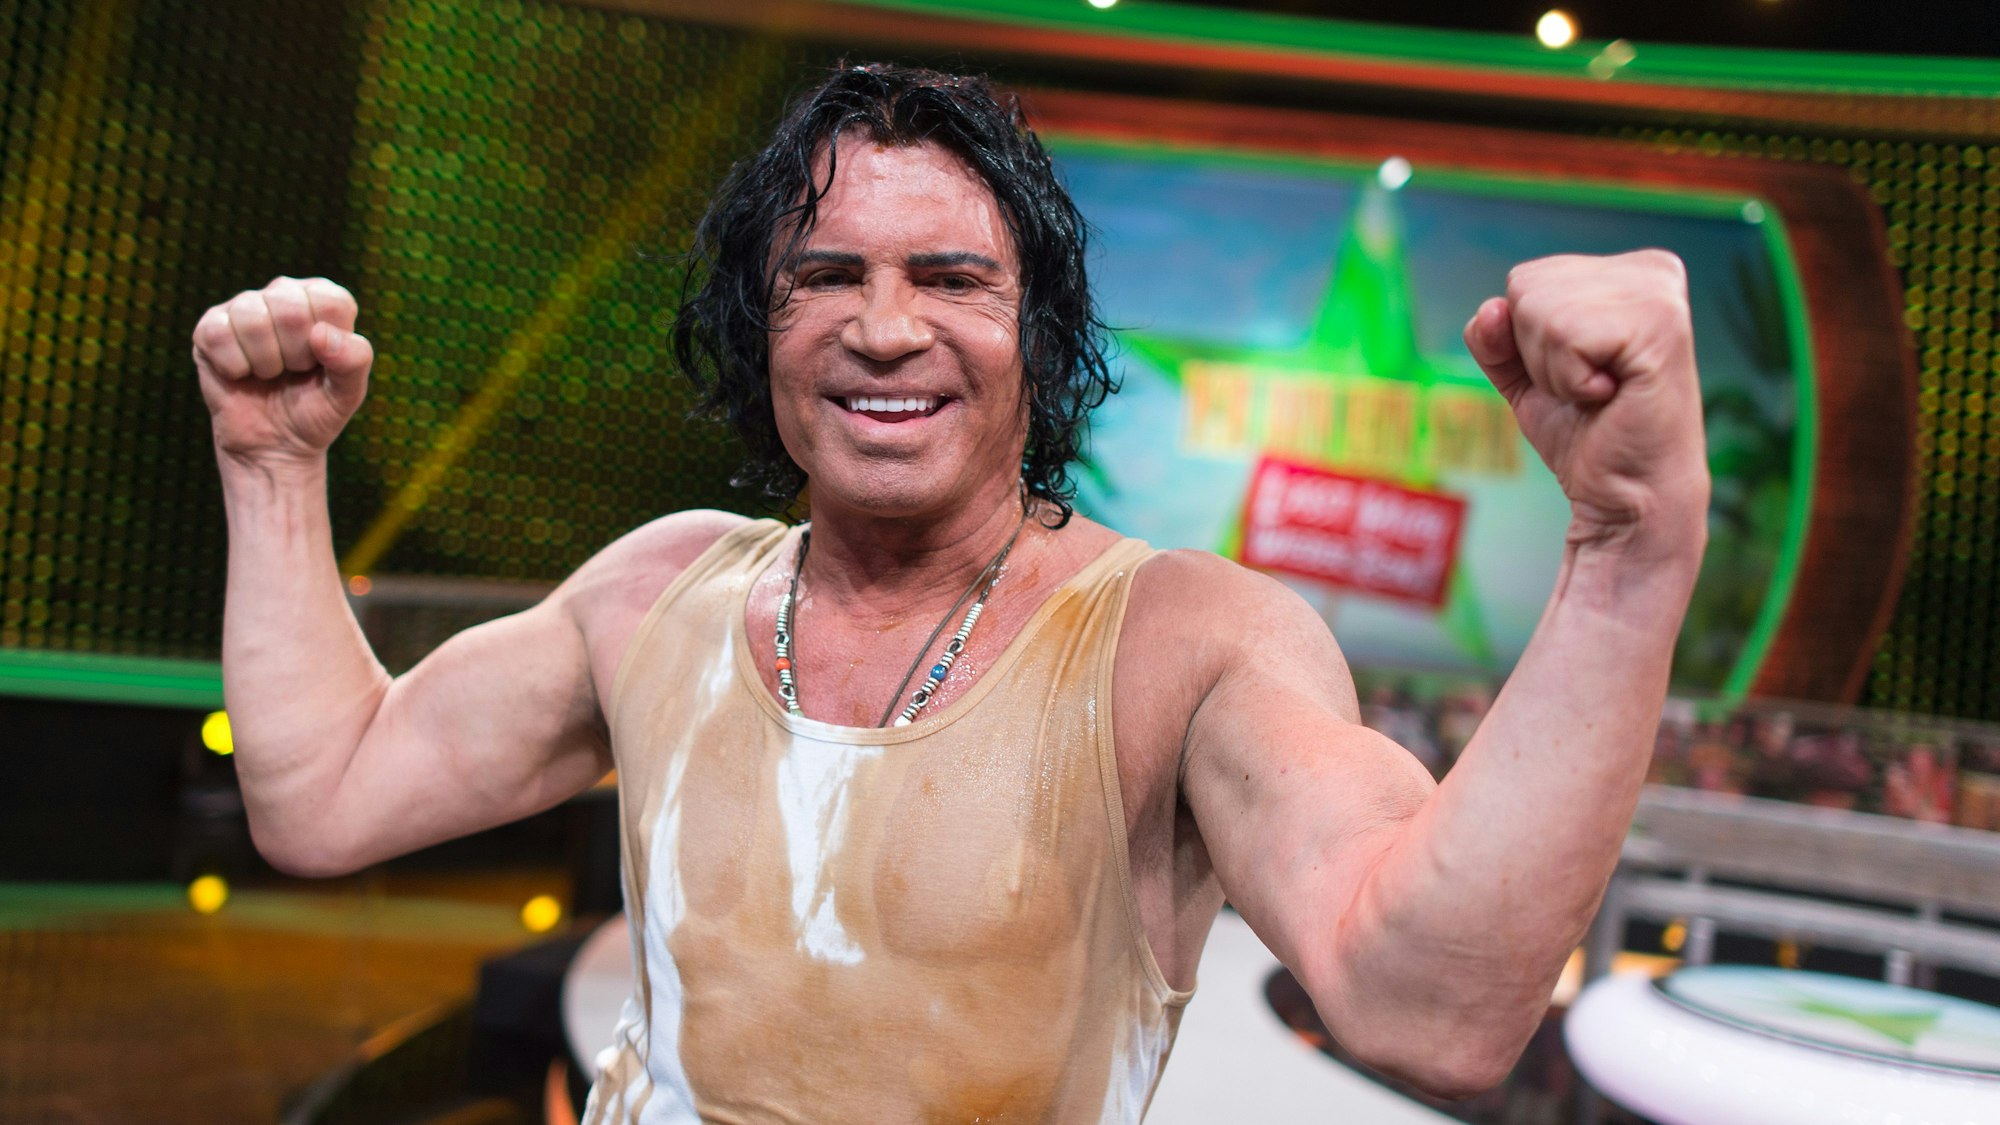 Sänger Costa Cordalis posiert nach der RTL-Show «Ich bin ein Star - Lasst mich wieder rein!» im August 2015.